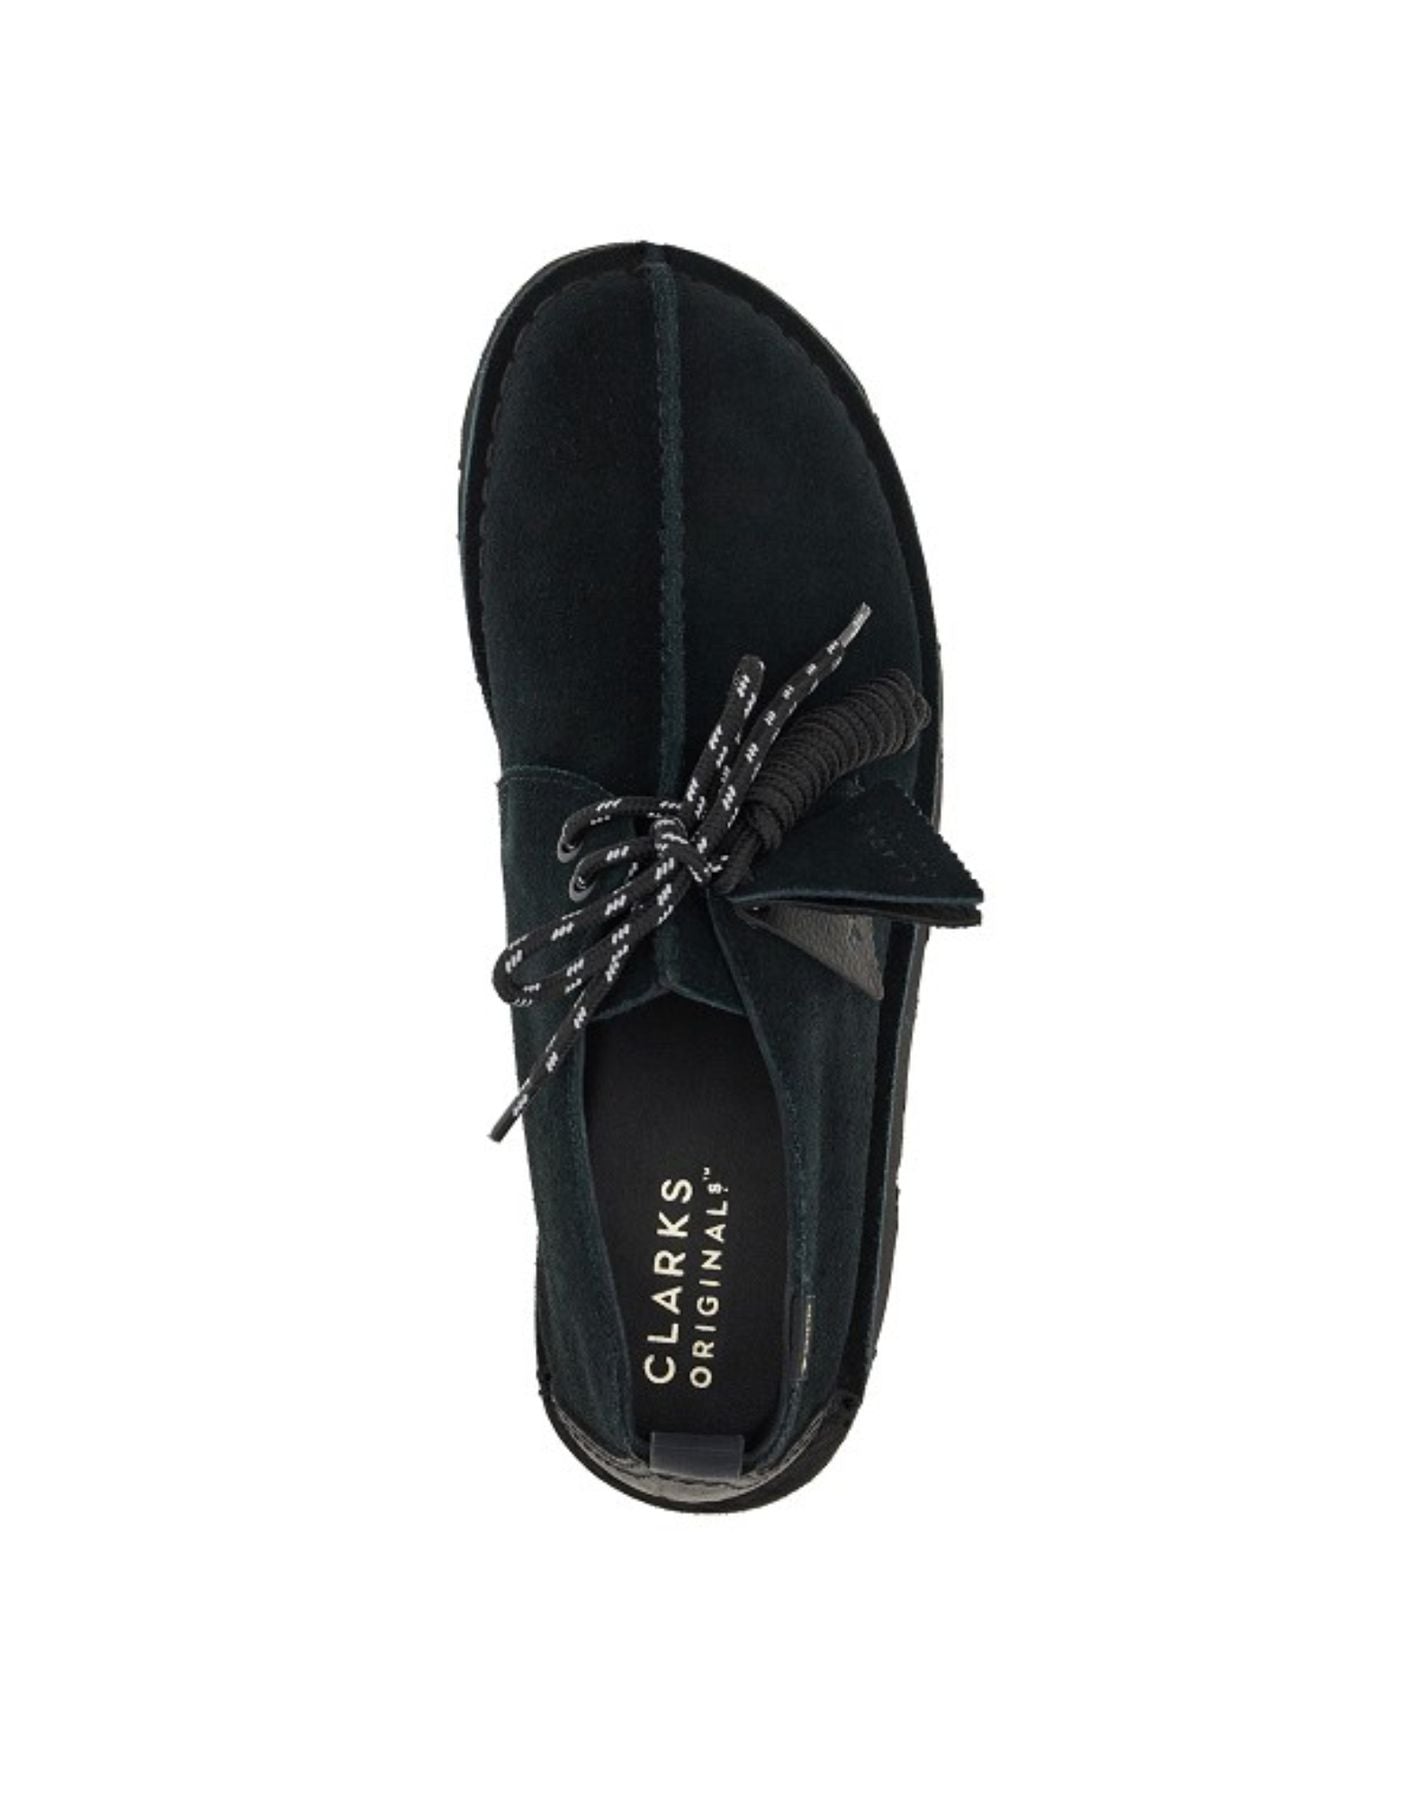 Shoes for man DESERT TREKGTX BLACK SDE Clarks Originals